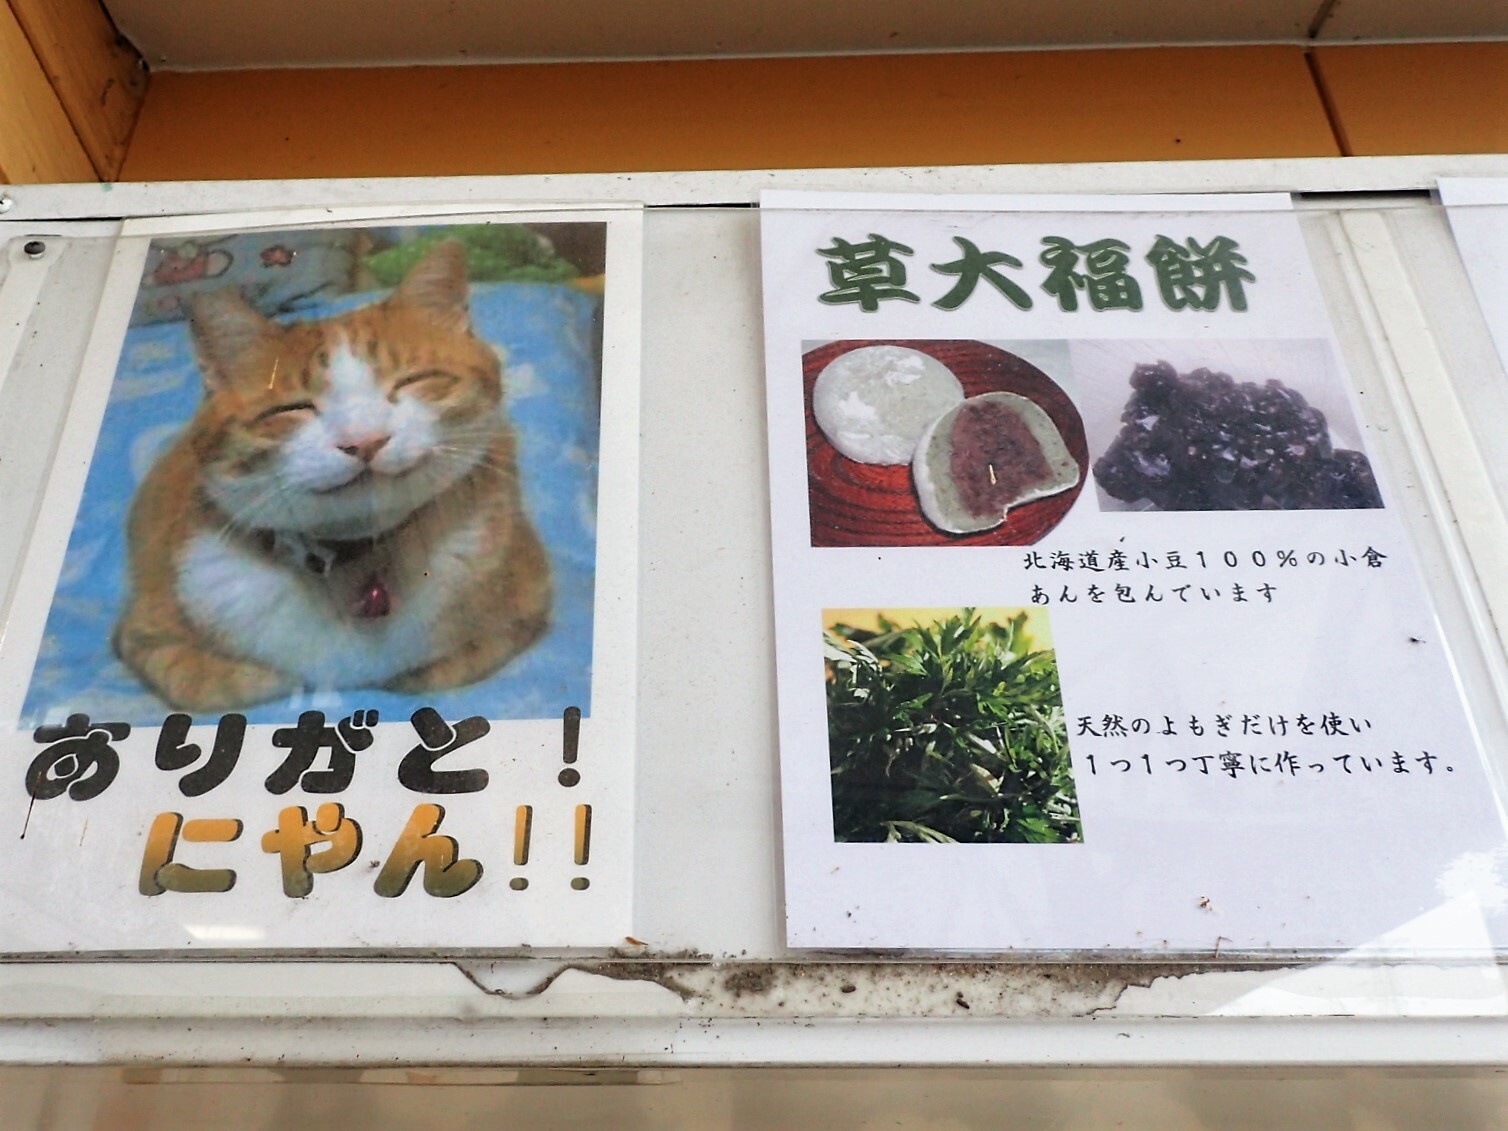 笑顔が可愛い猫の写真と、美味しそうな草大福餅の写真。